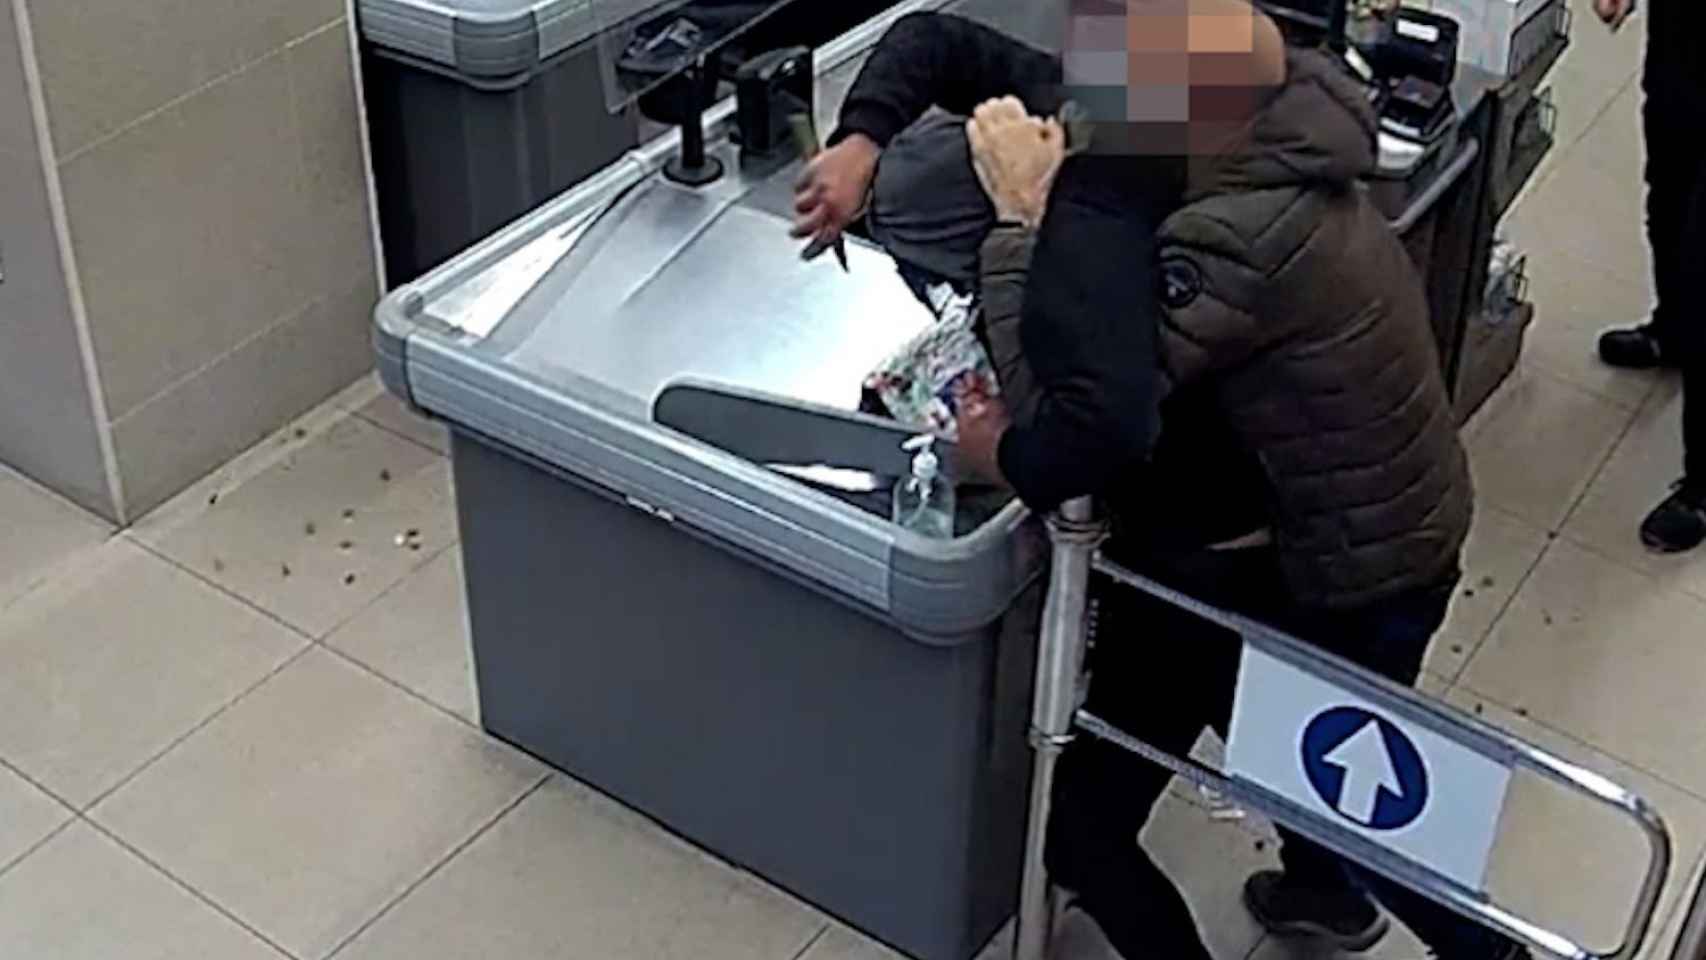 Espectacular detención de un ladrón armado con un cuchillo en un supermercado de Mataró / MOSSOS D'ESQUADRA